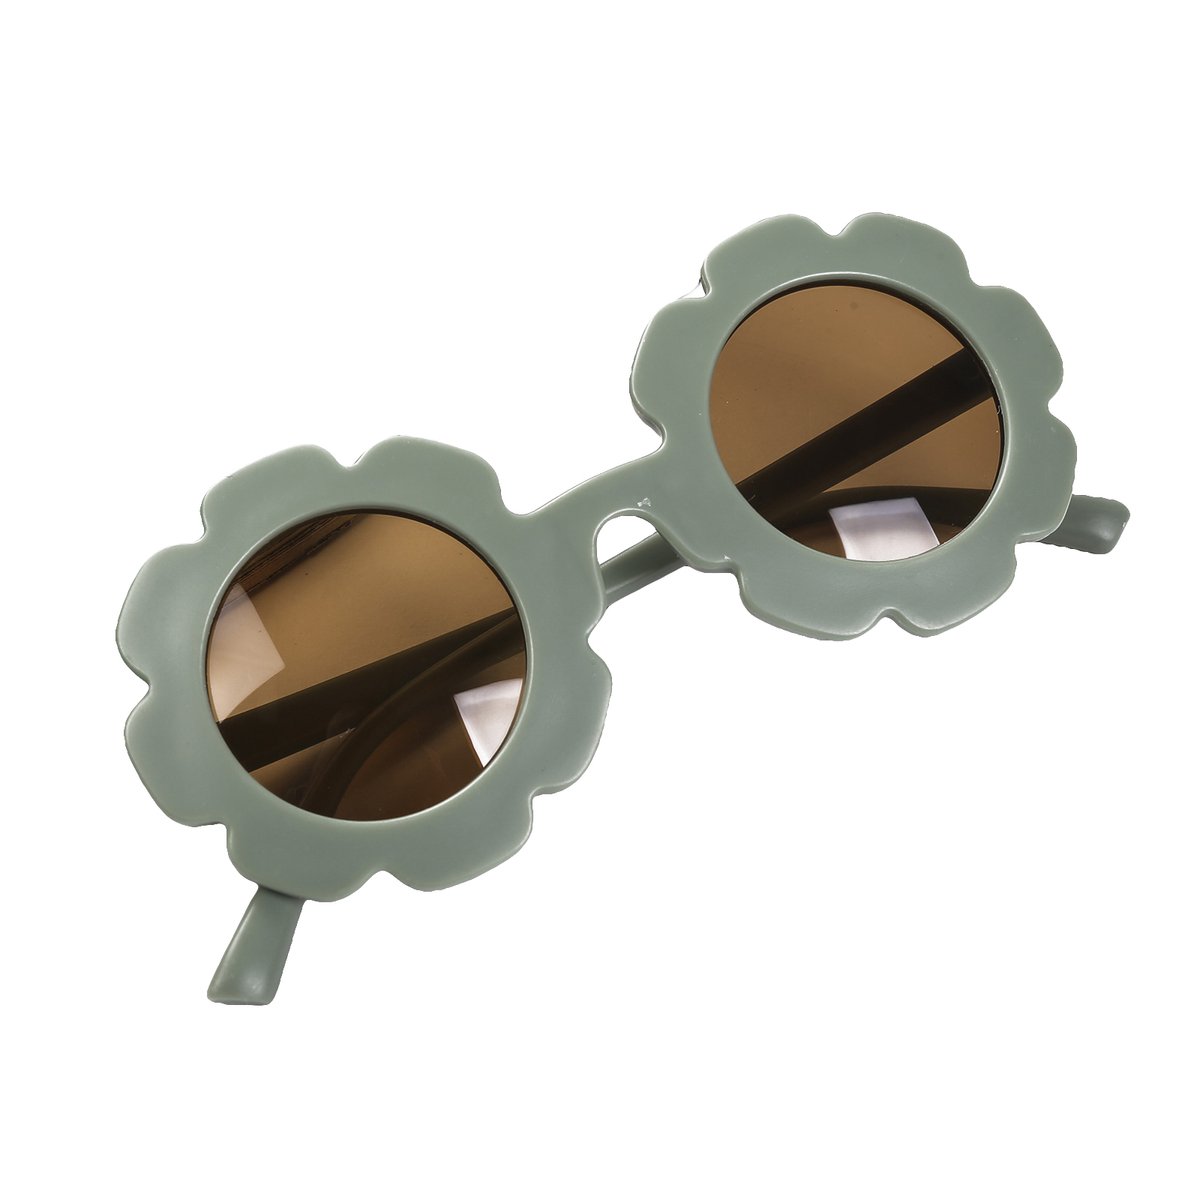 Maesy - kinderzonnebril Sunny - bloem zonnebril voor kinderen - peuters - jongens en meisjes - UV400 bescherming - hippe retro bril rond - donker mint groen